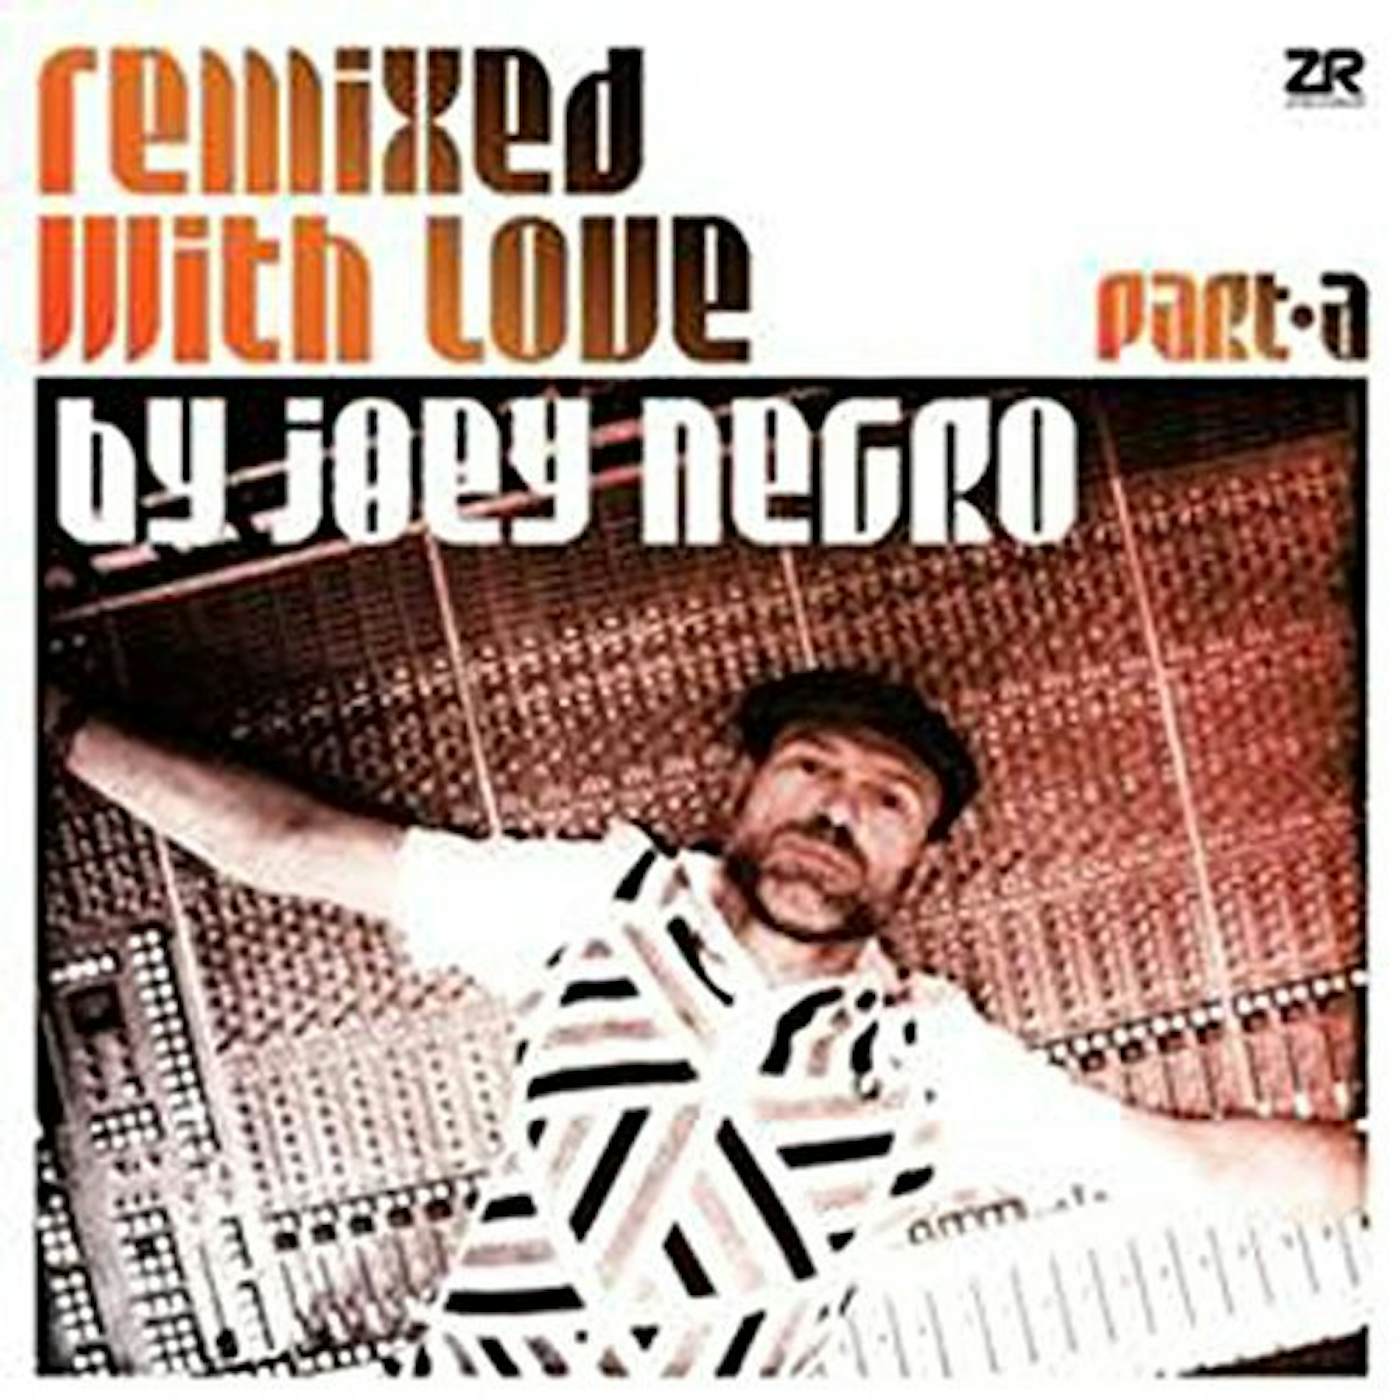 Joey Negro REMIXED WITH LOVE Vinyl Record